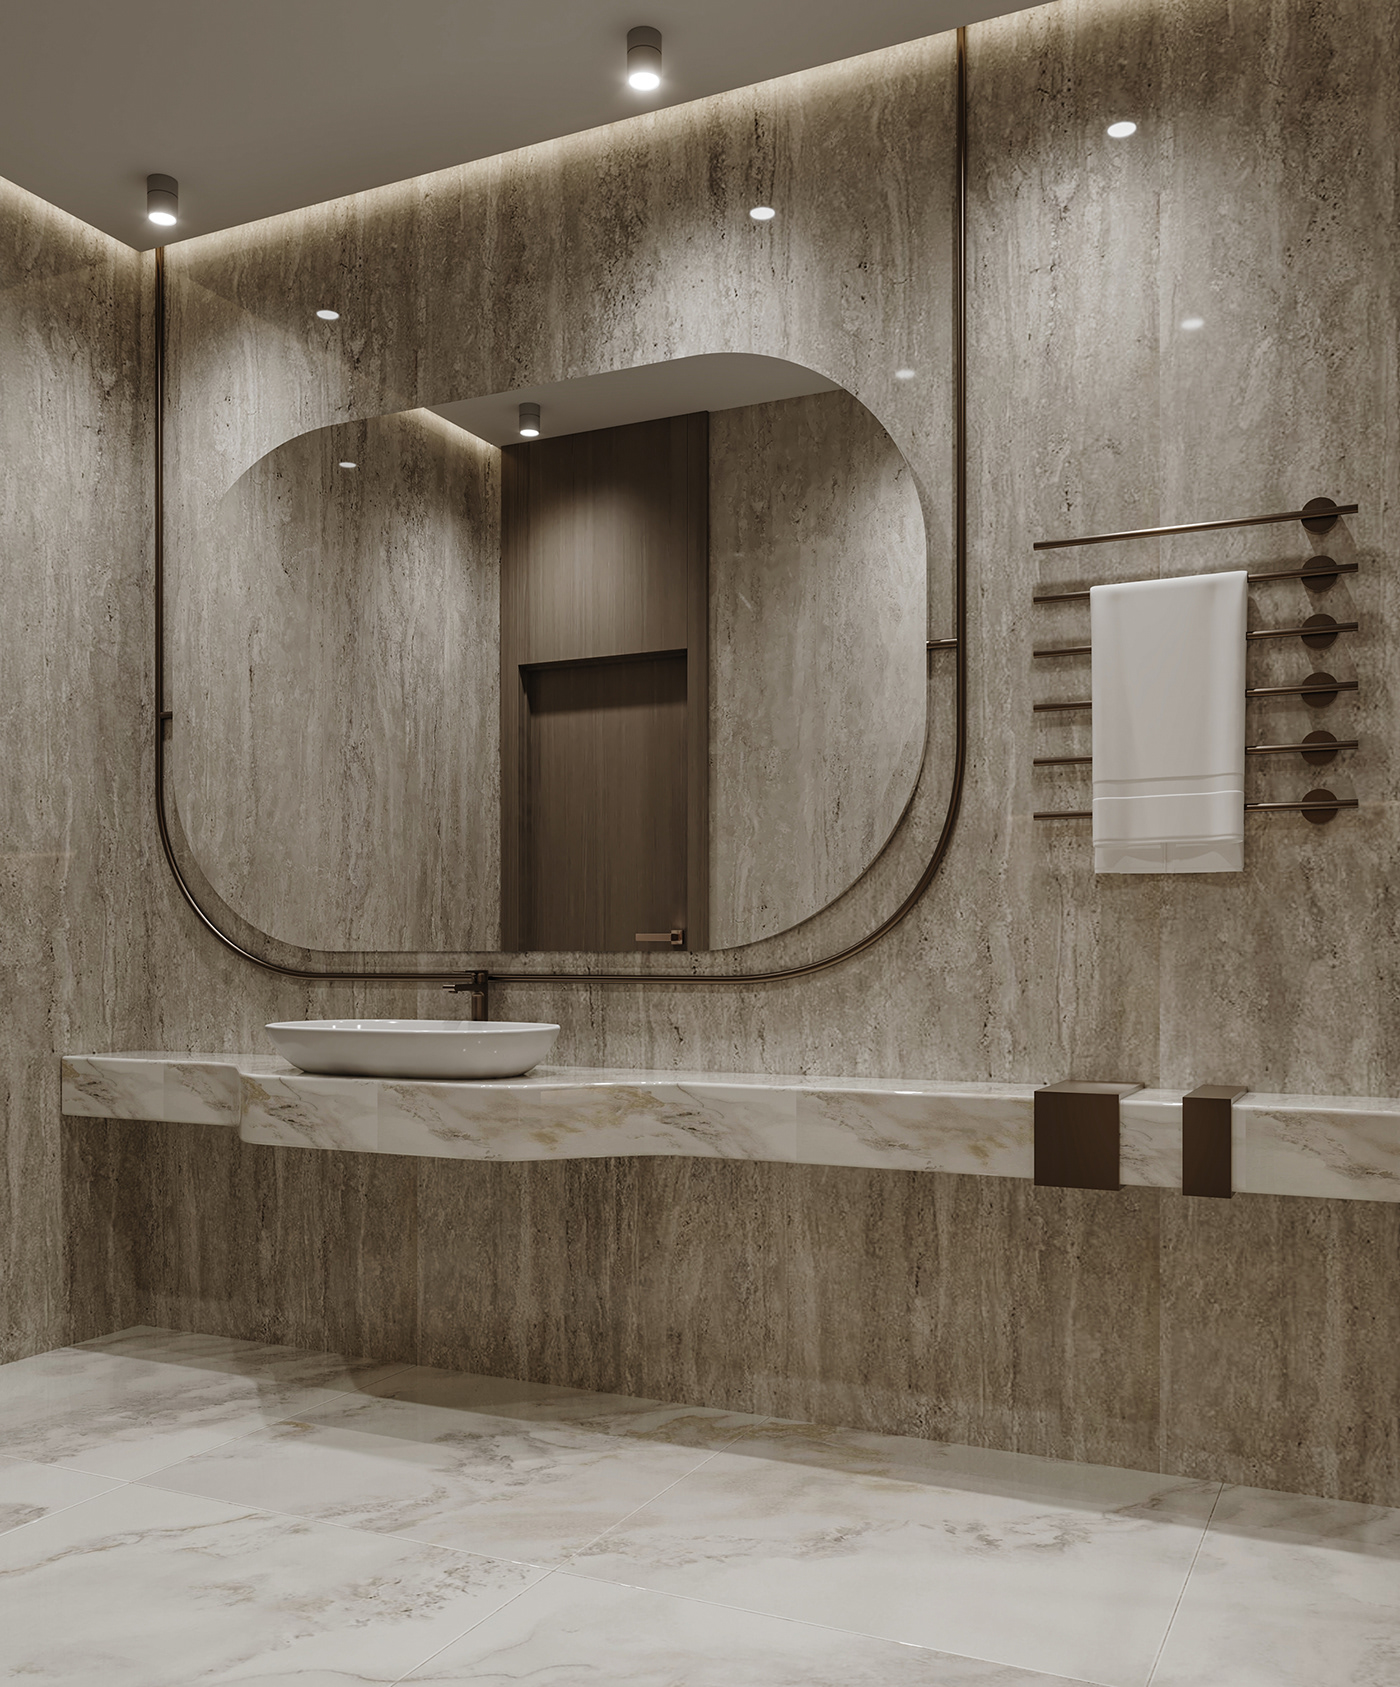 Sink SHOWER bathroom interior design  architecture Render modern visualization design